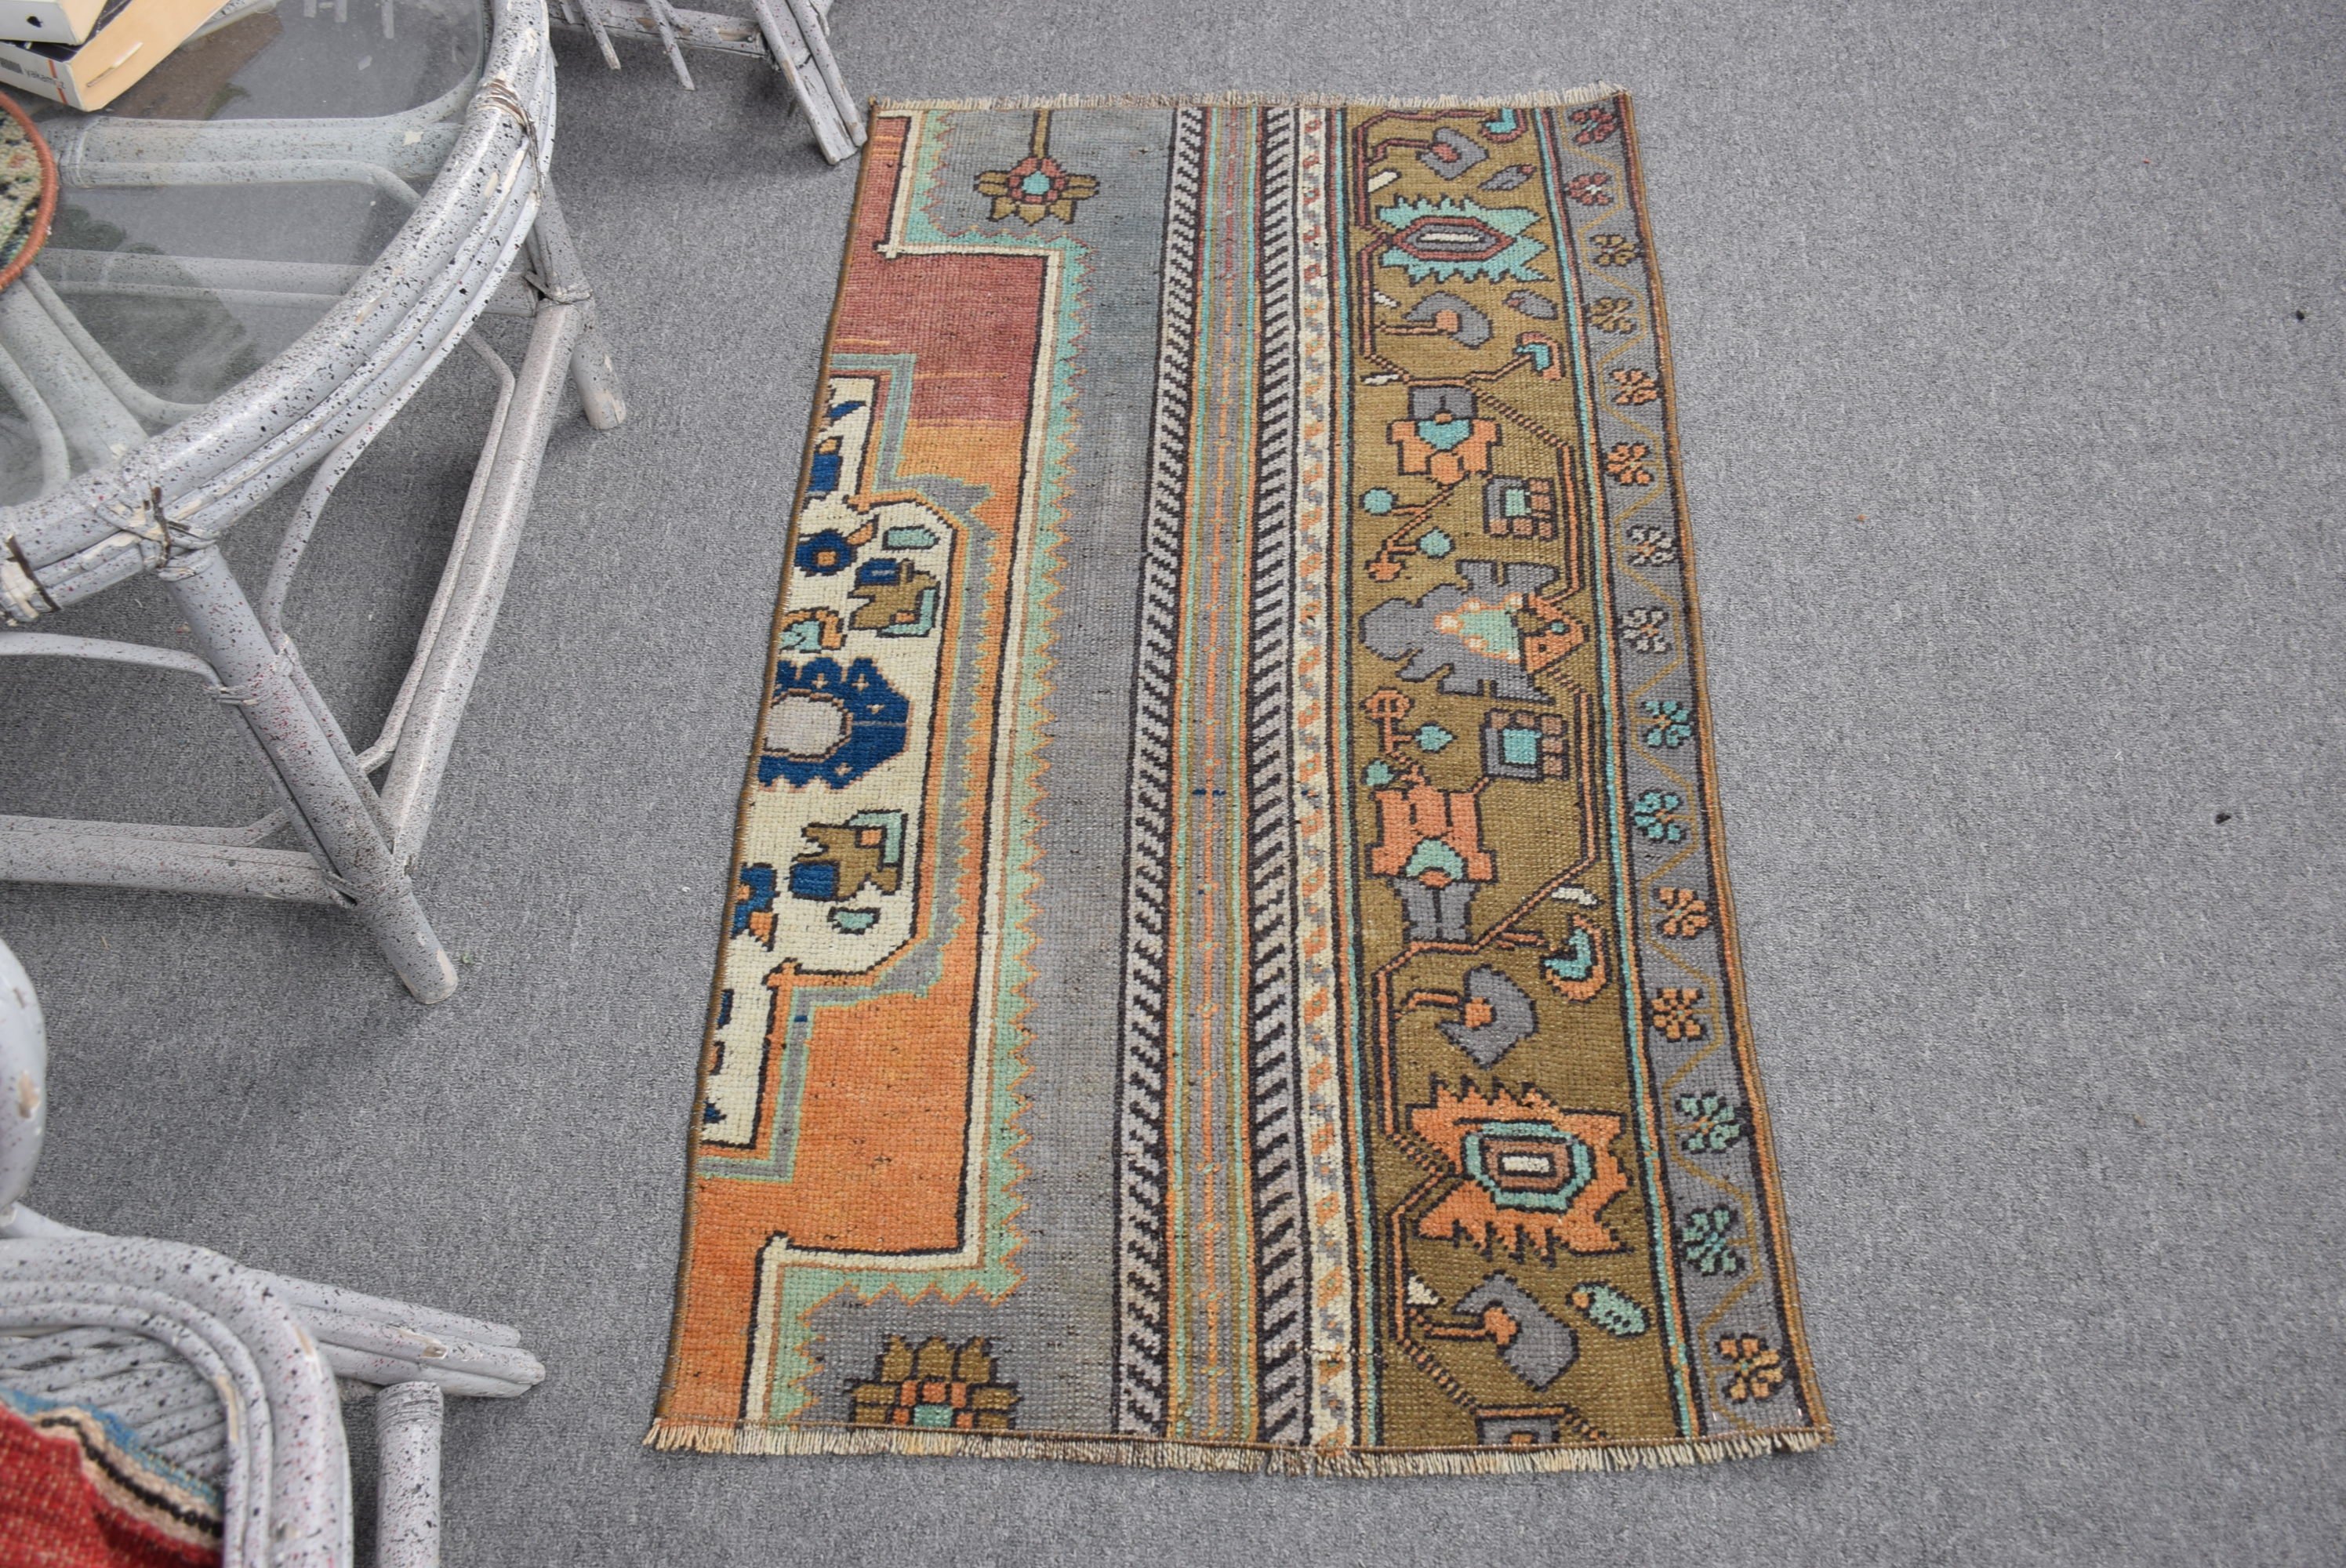 Vintage Rug, Bath Rugs, Rugs for Bedroom, Turkish Rug, Wall Hanging Rug, Wool Rug, Oriental Rugs, Orange Oriental Rug, 2x3.5 ft Small Rugs